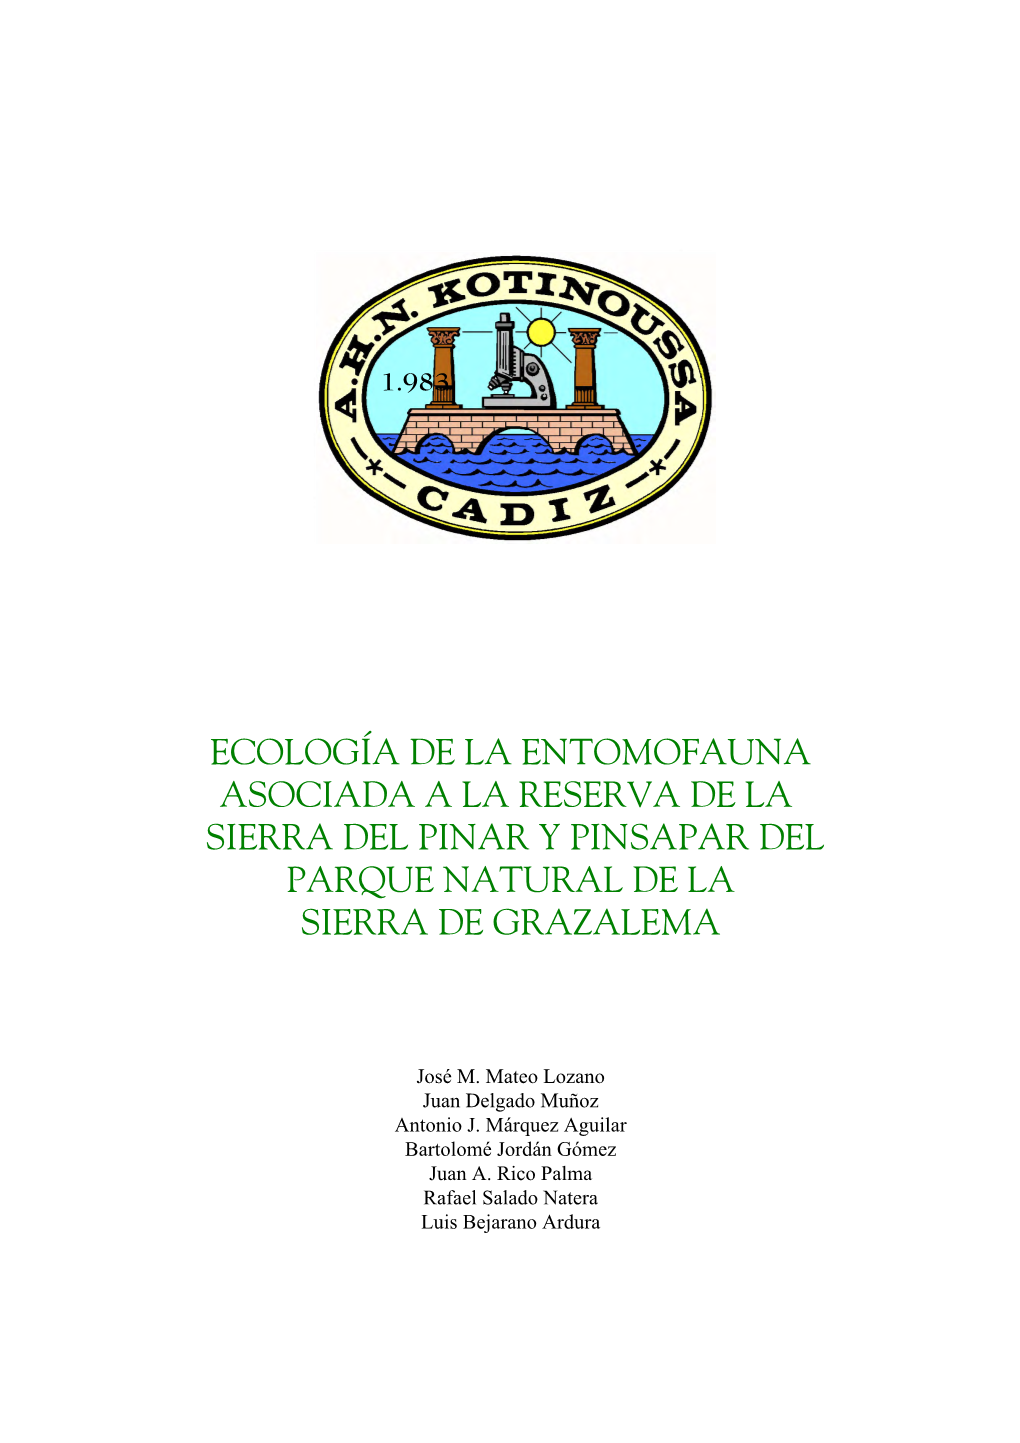 Ecología De La Entomofauna Asociada a La Reserva De La Sierra Del Pinar Y Pinsapar Del Parque Natural De La Sierra De Grazalema